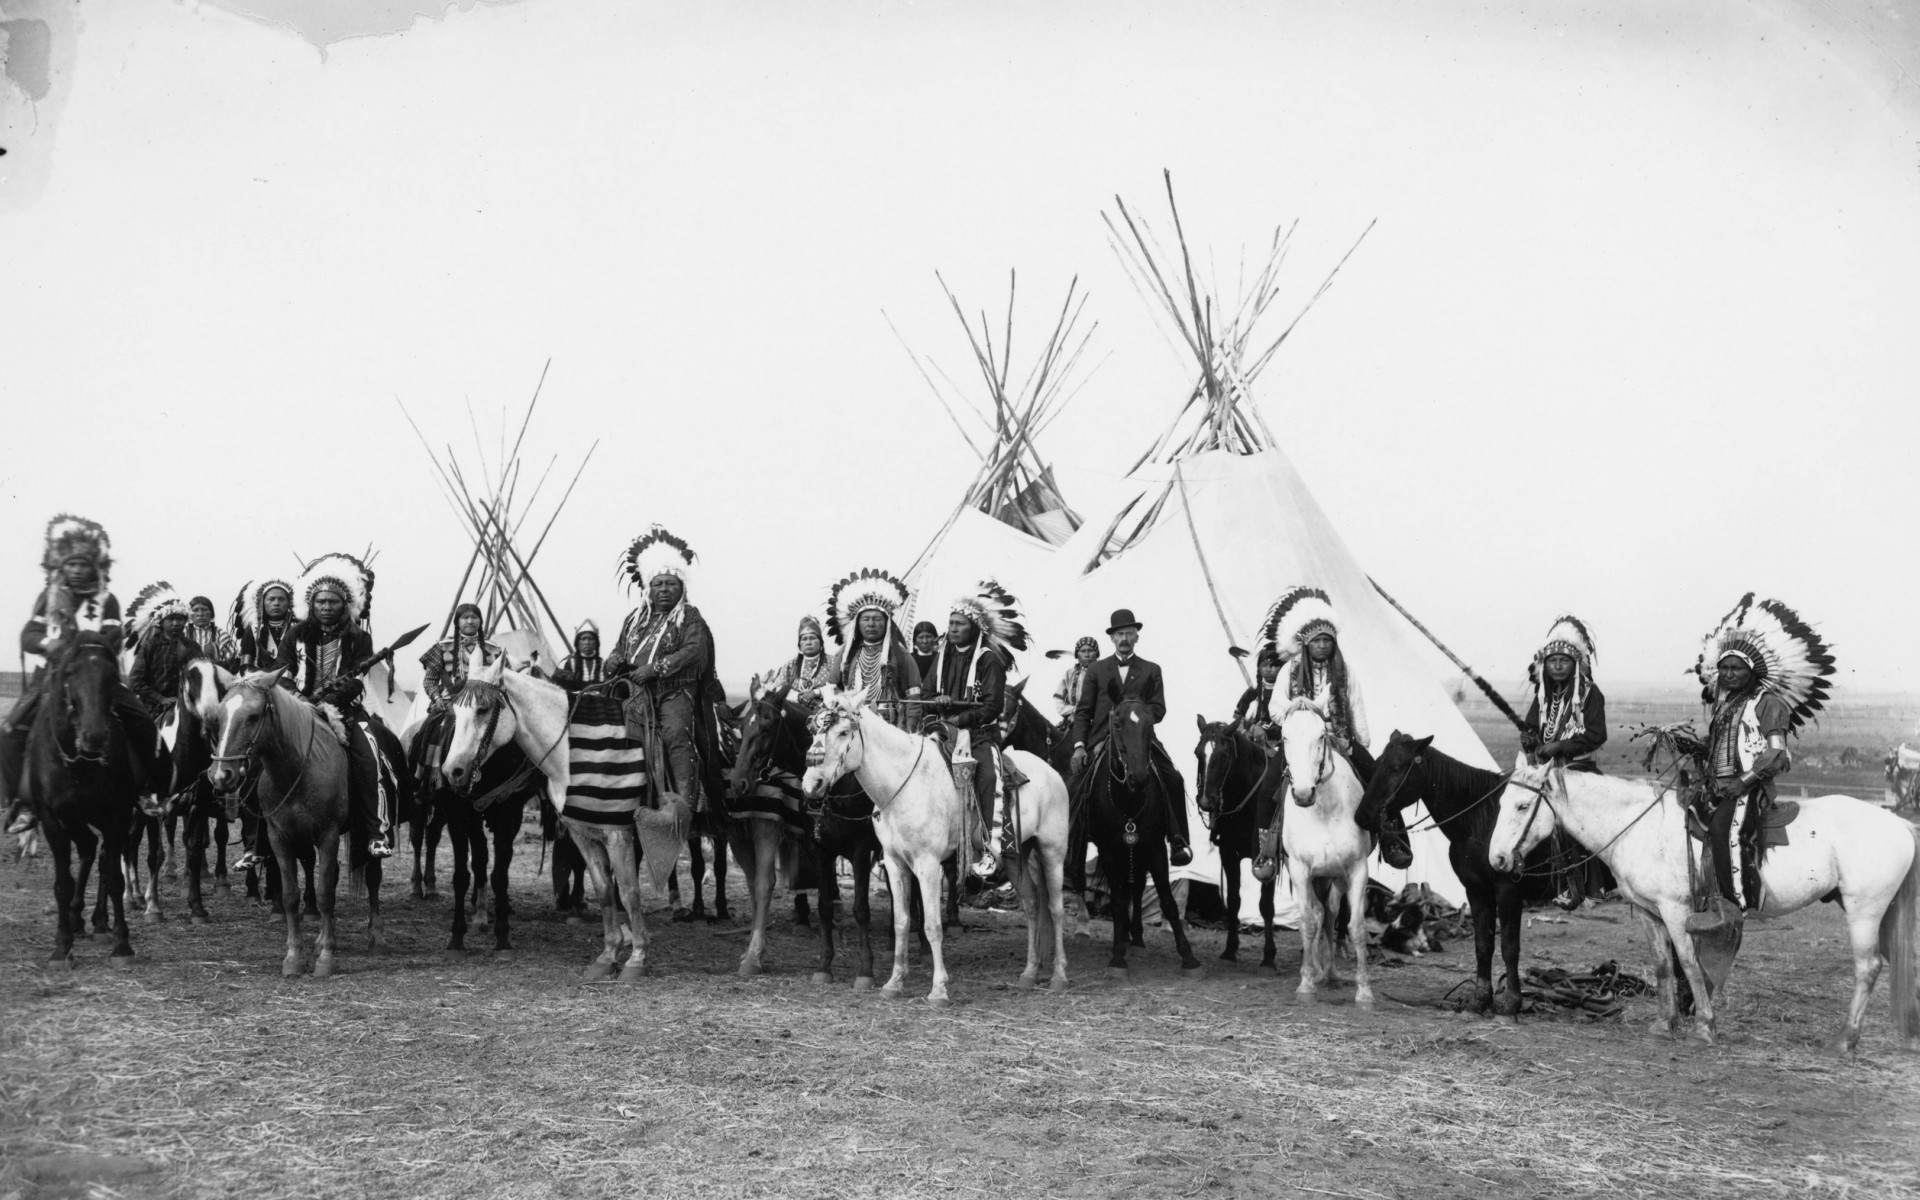 Indians Horses Tepee Feathers Retro Vintage Photo Black White Native